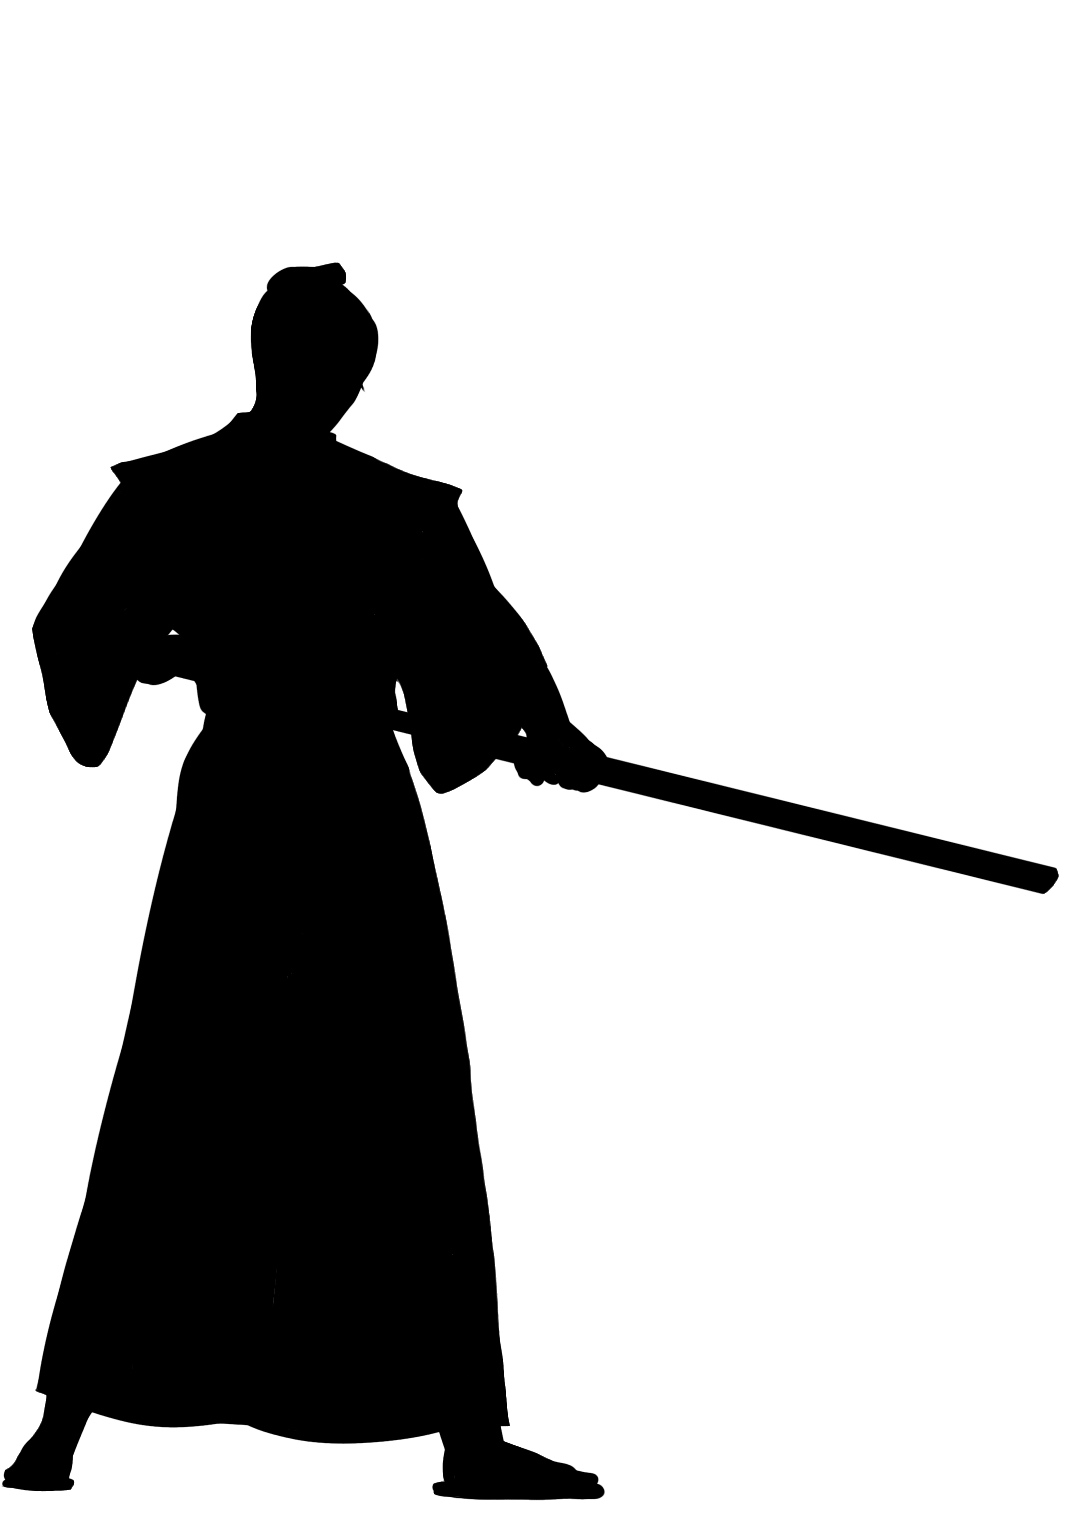 日本刀と西洋剣（ソード）の強度、刃持ちの比較